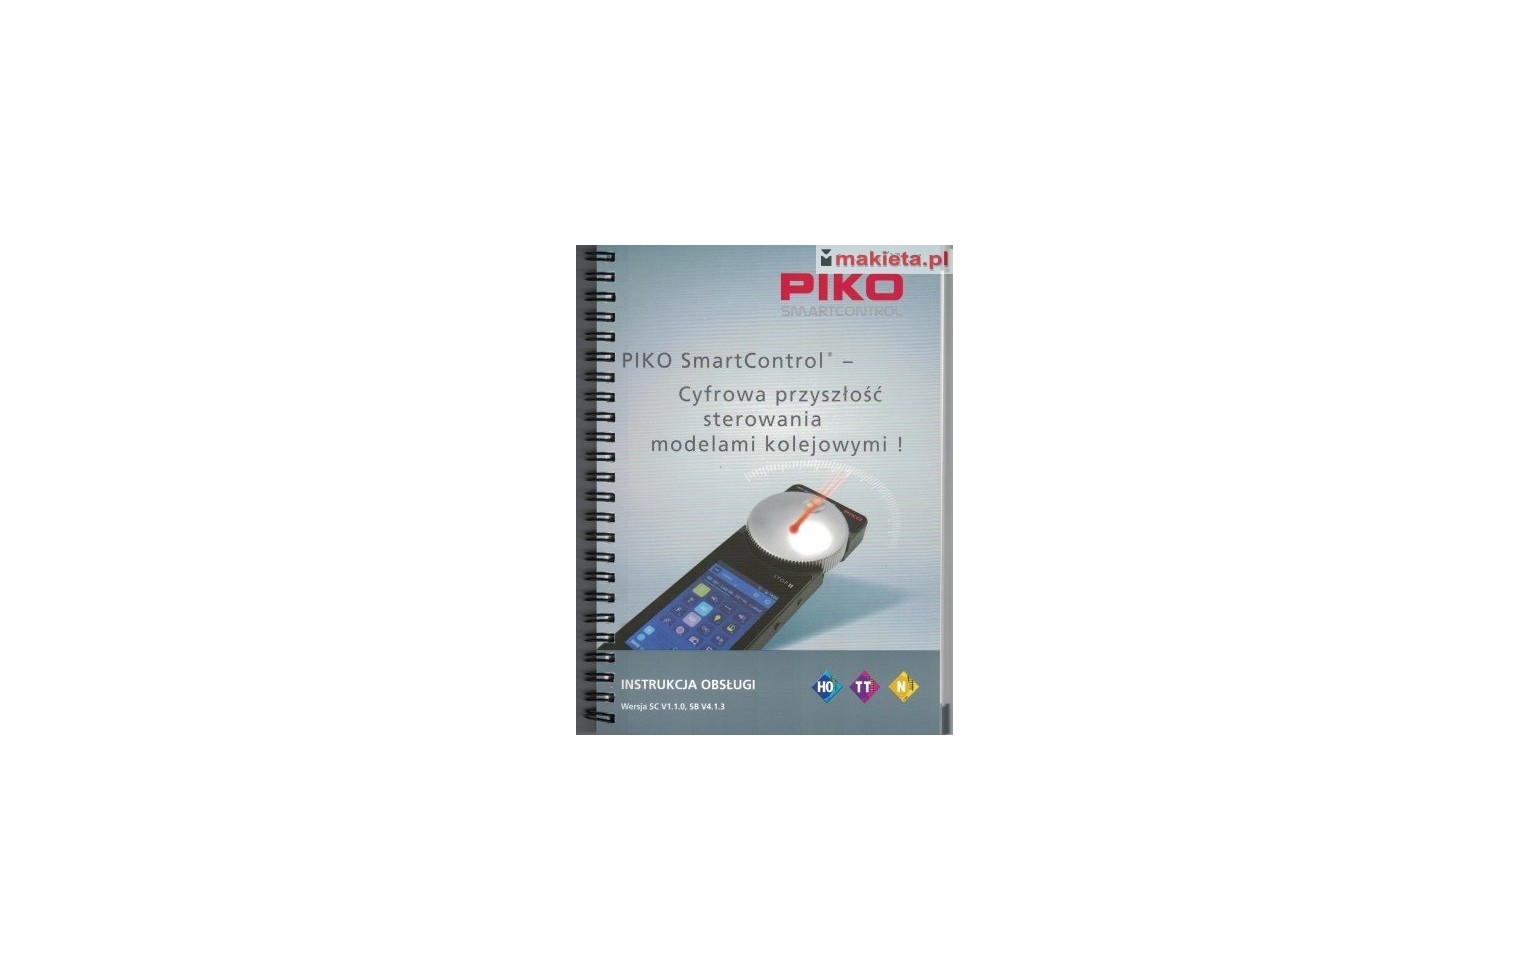 Piko 99534PL, SmartControl - instrukcja obsługi